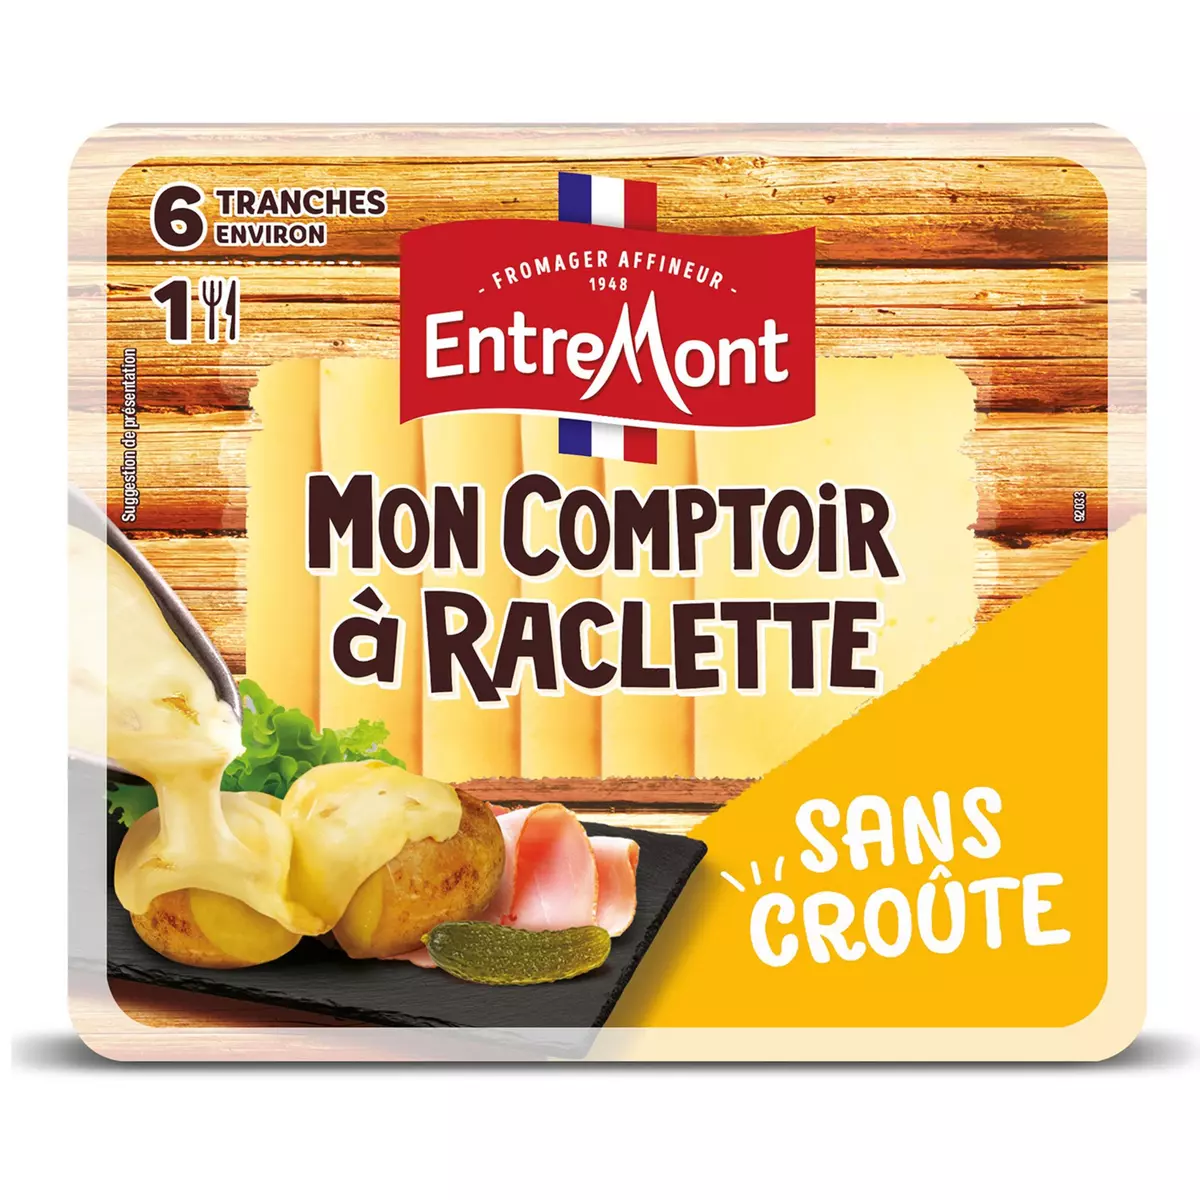 ENTREMONT Mon comptoir à raclette fromage sans croûte  6 tranches environ 140g